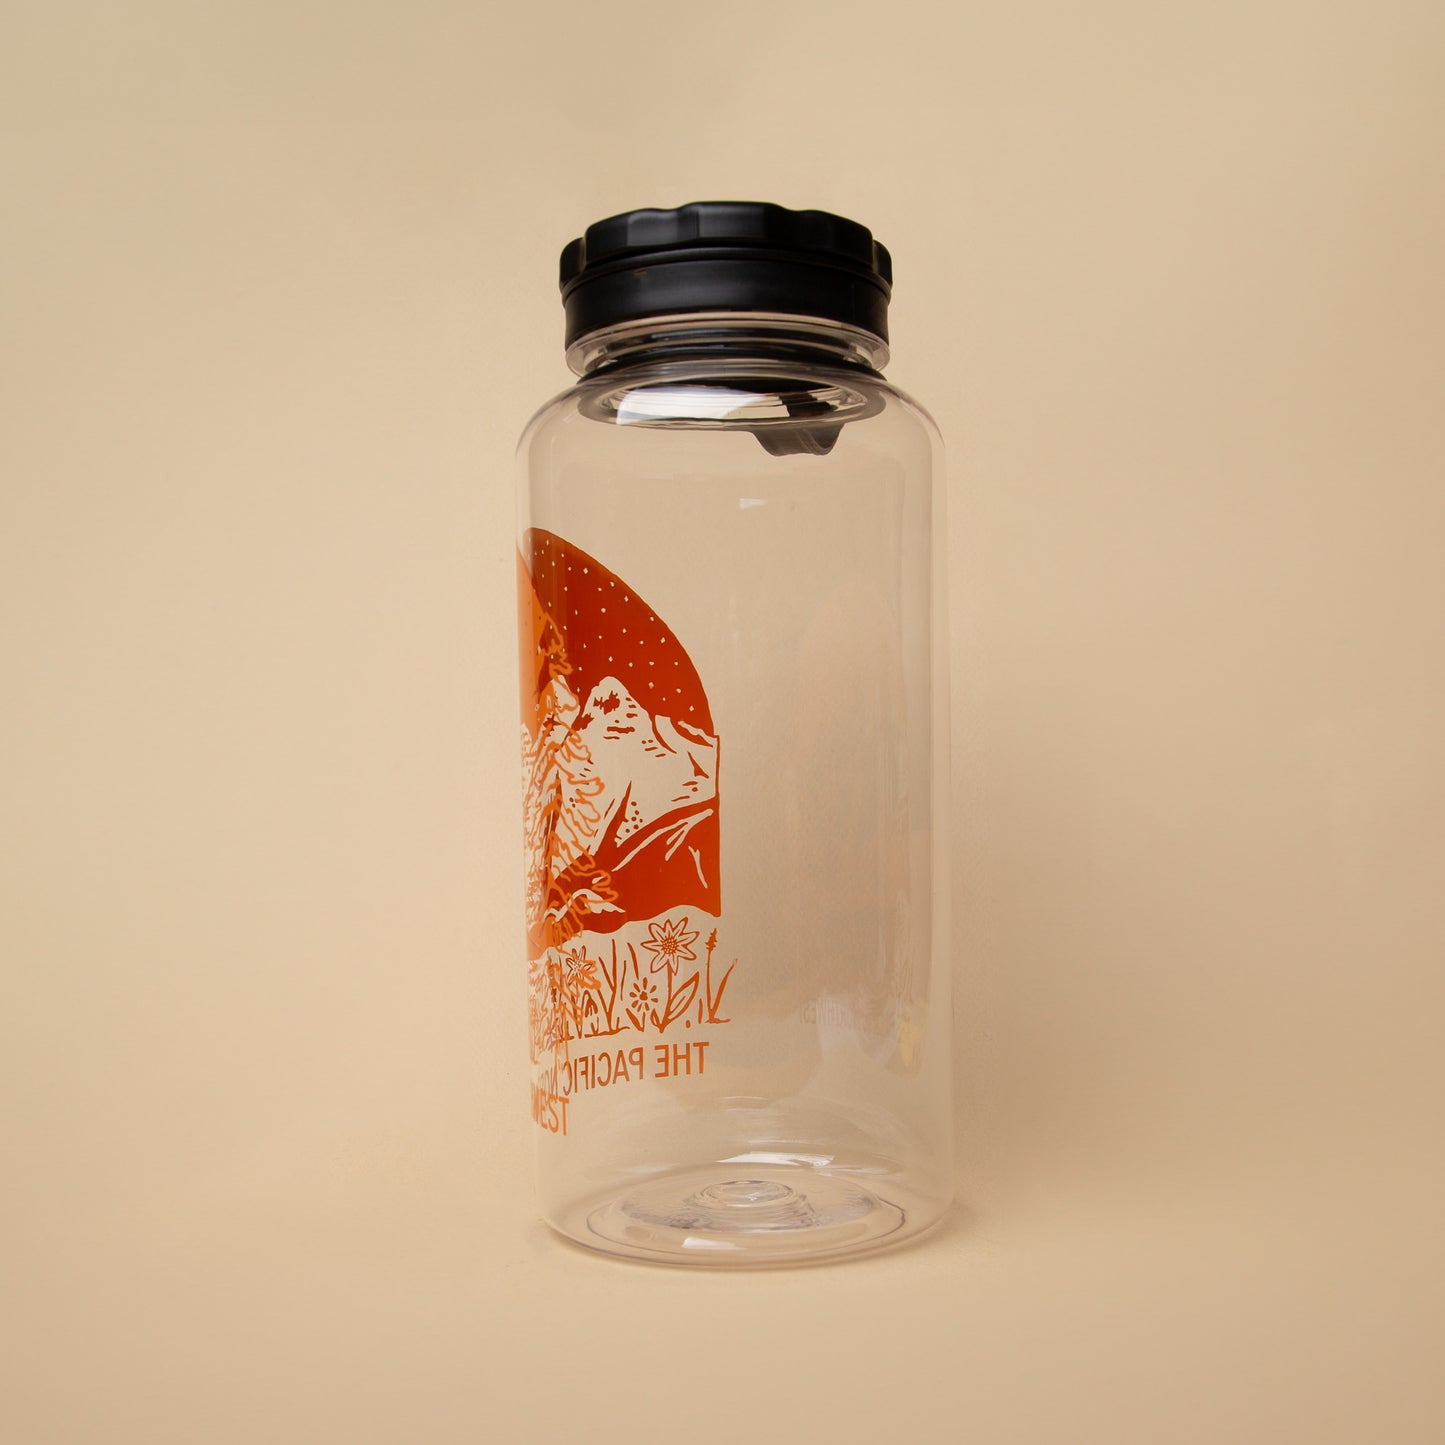 PNW Landscape Water Bottle